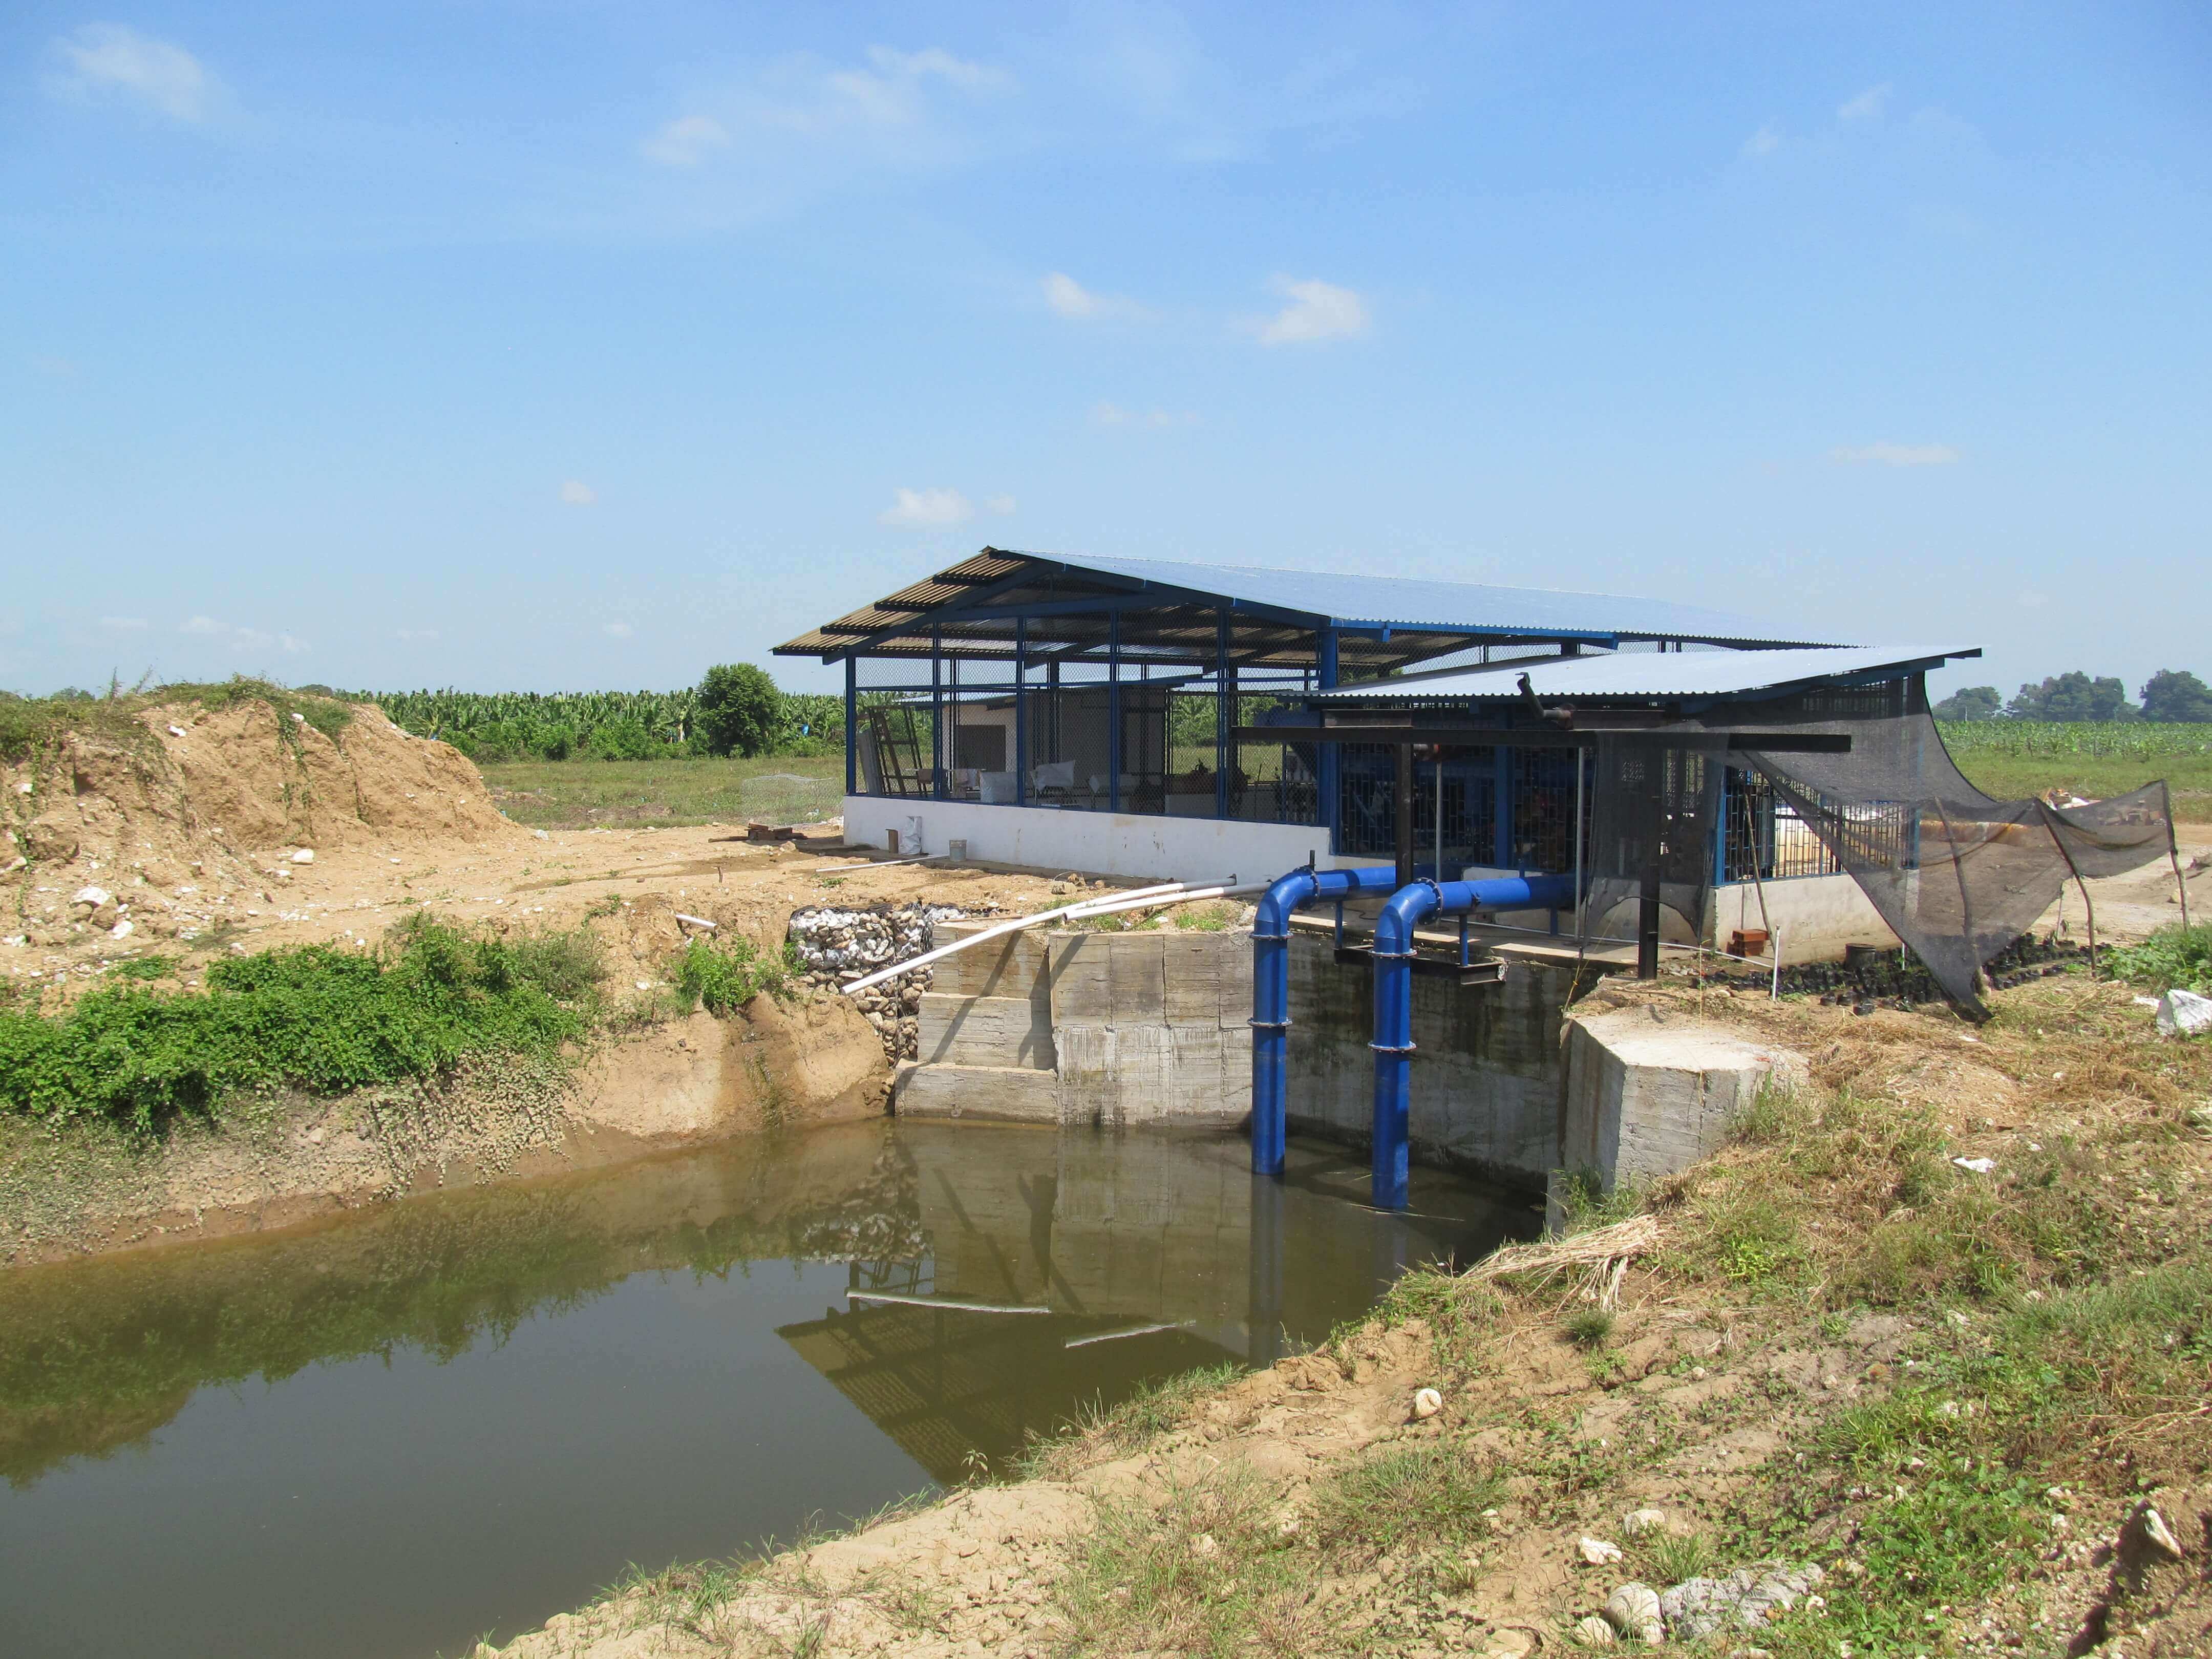 Muchas fincas en Zona Bananera han construido reservorios para almacenar el agua y tener con que regar sus cultivos en los meses secos.